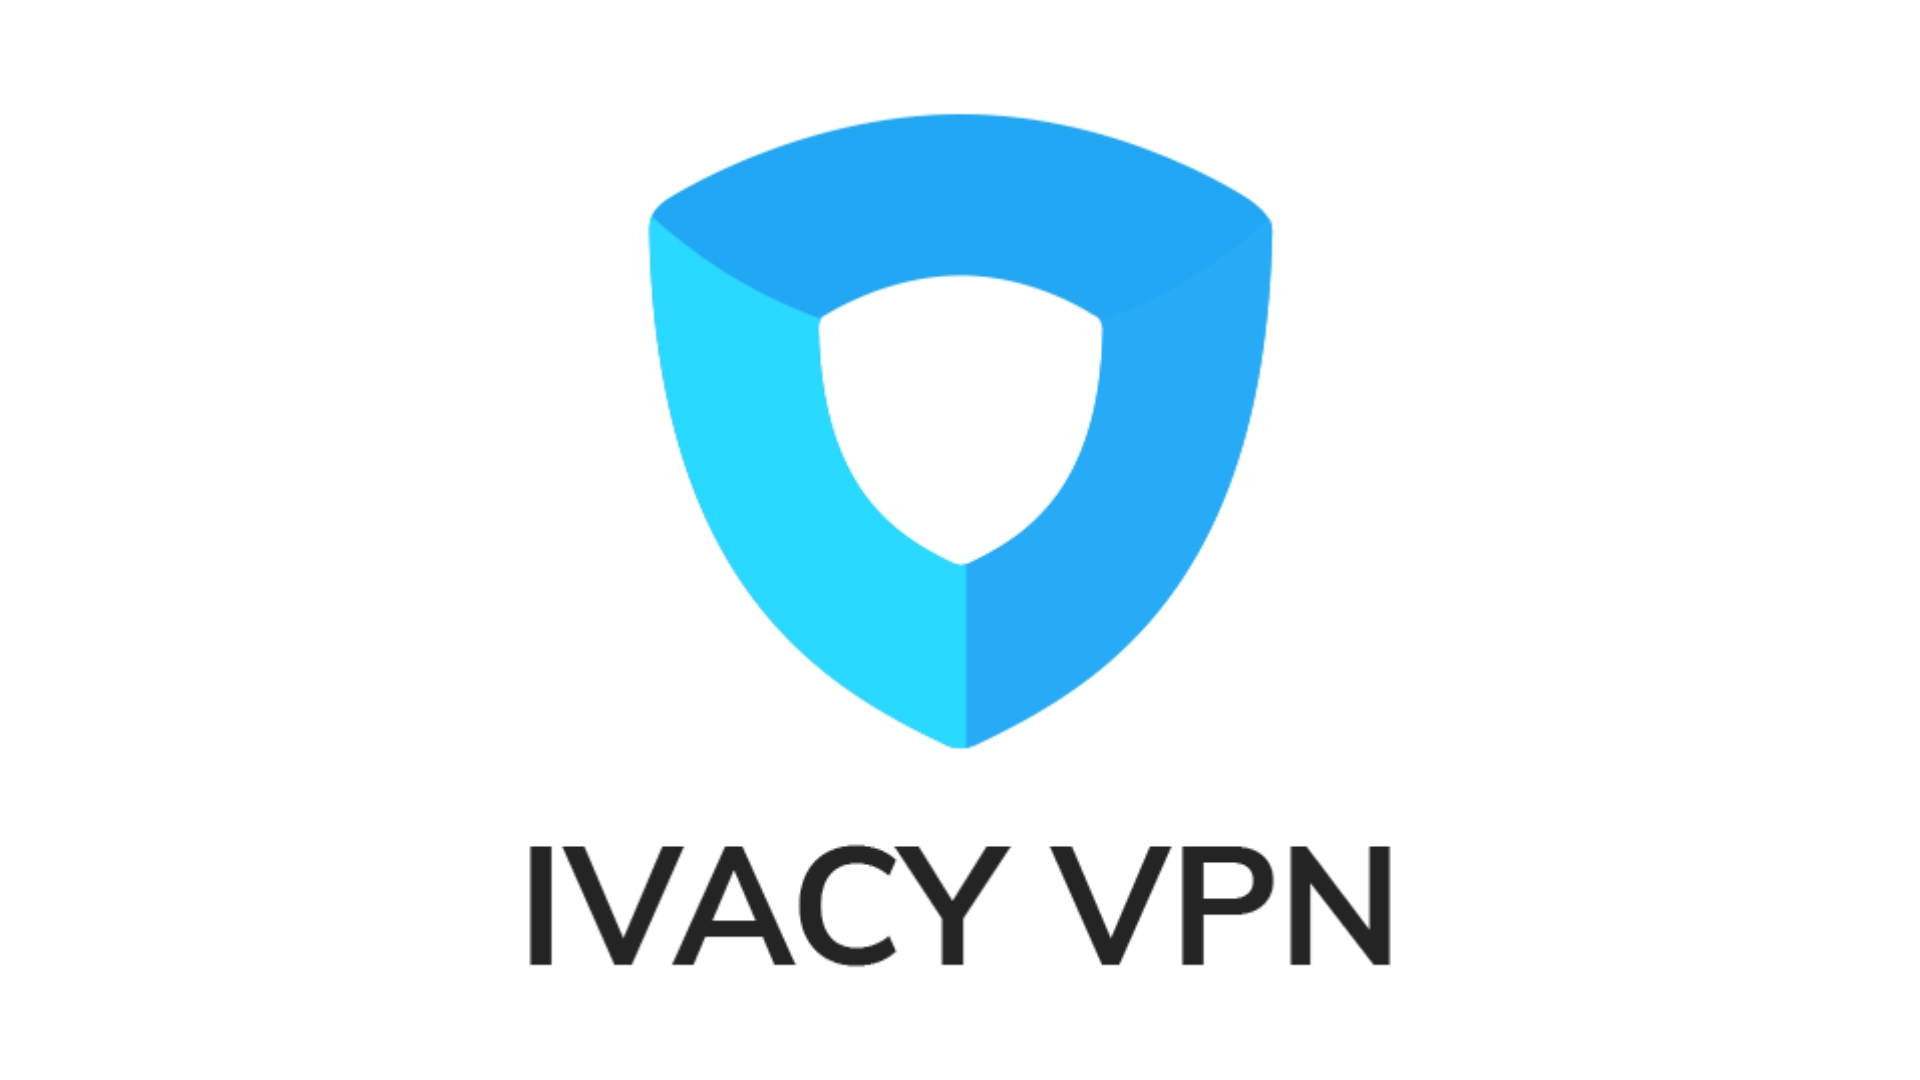 Best Tinder VPN: Ivacy VPN. Image shows the company logo.